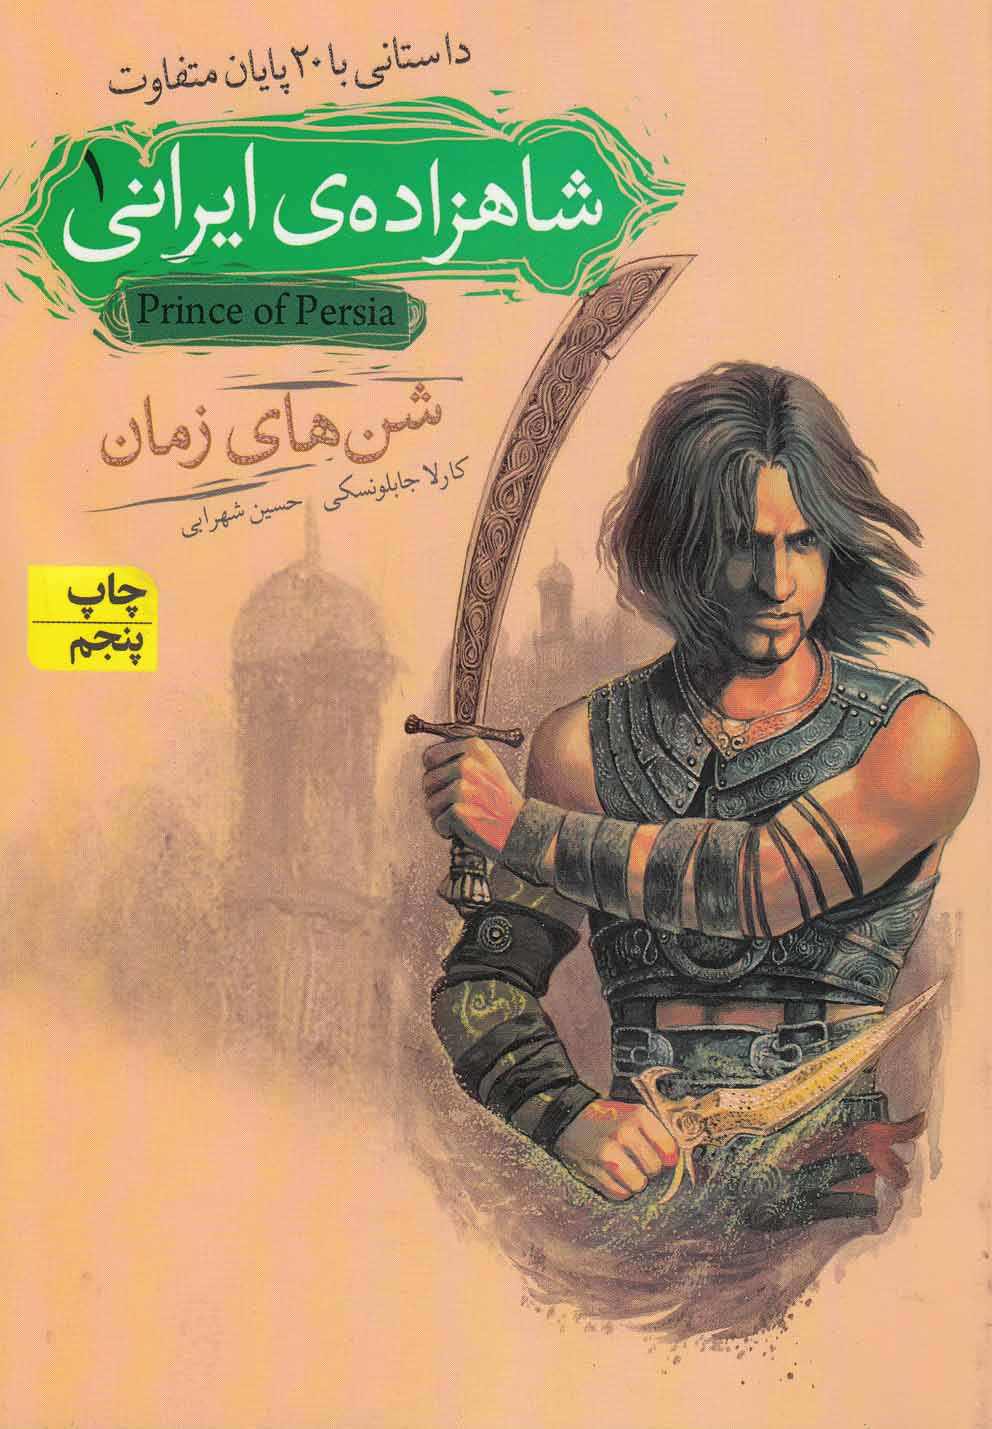 رمان نوجوان 77: شاهزاده ایرانی 1: شن های زمان